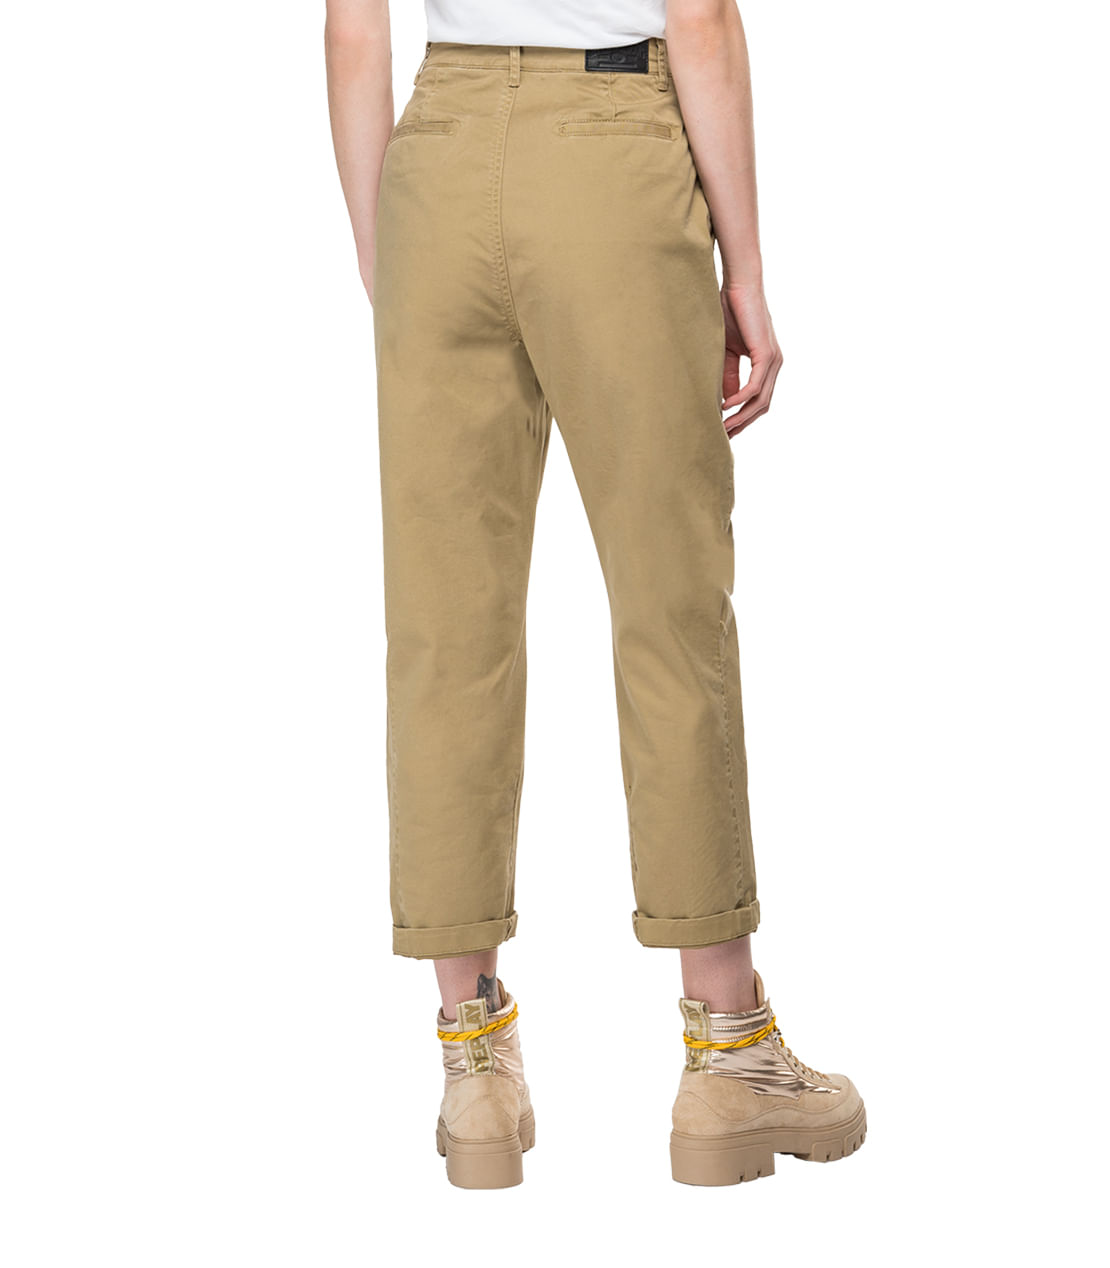 Pantalon Cargo Para Mujer Pants 4476